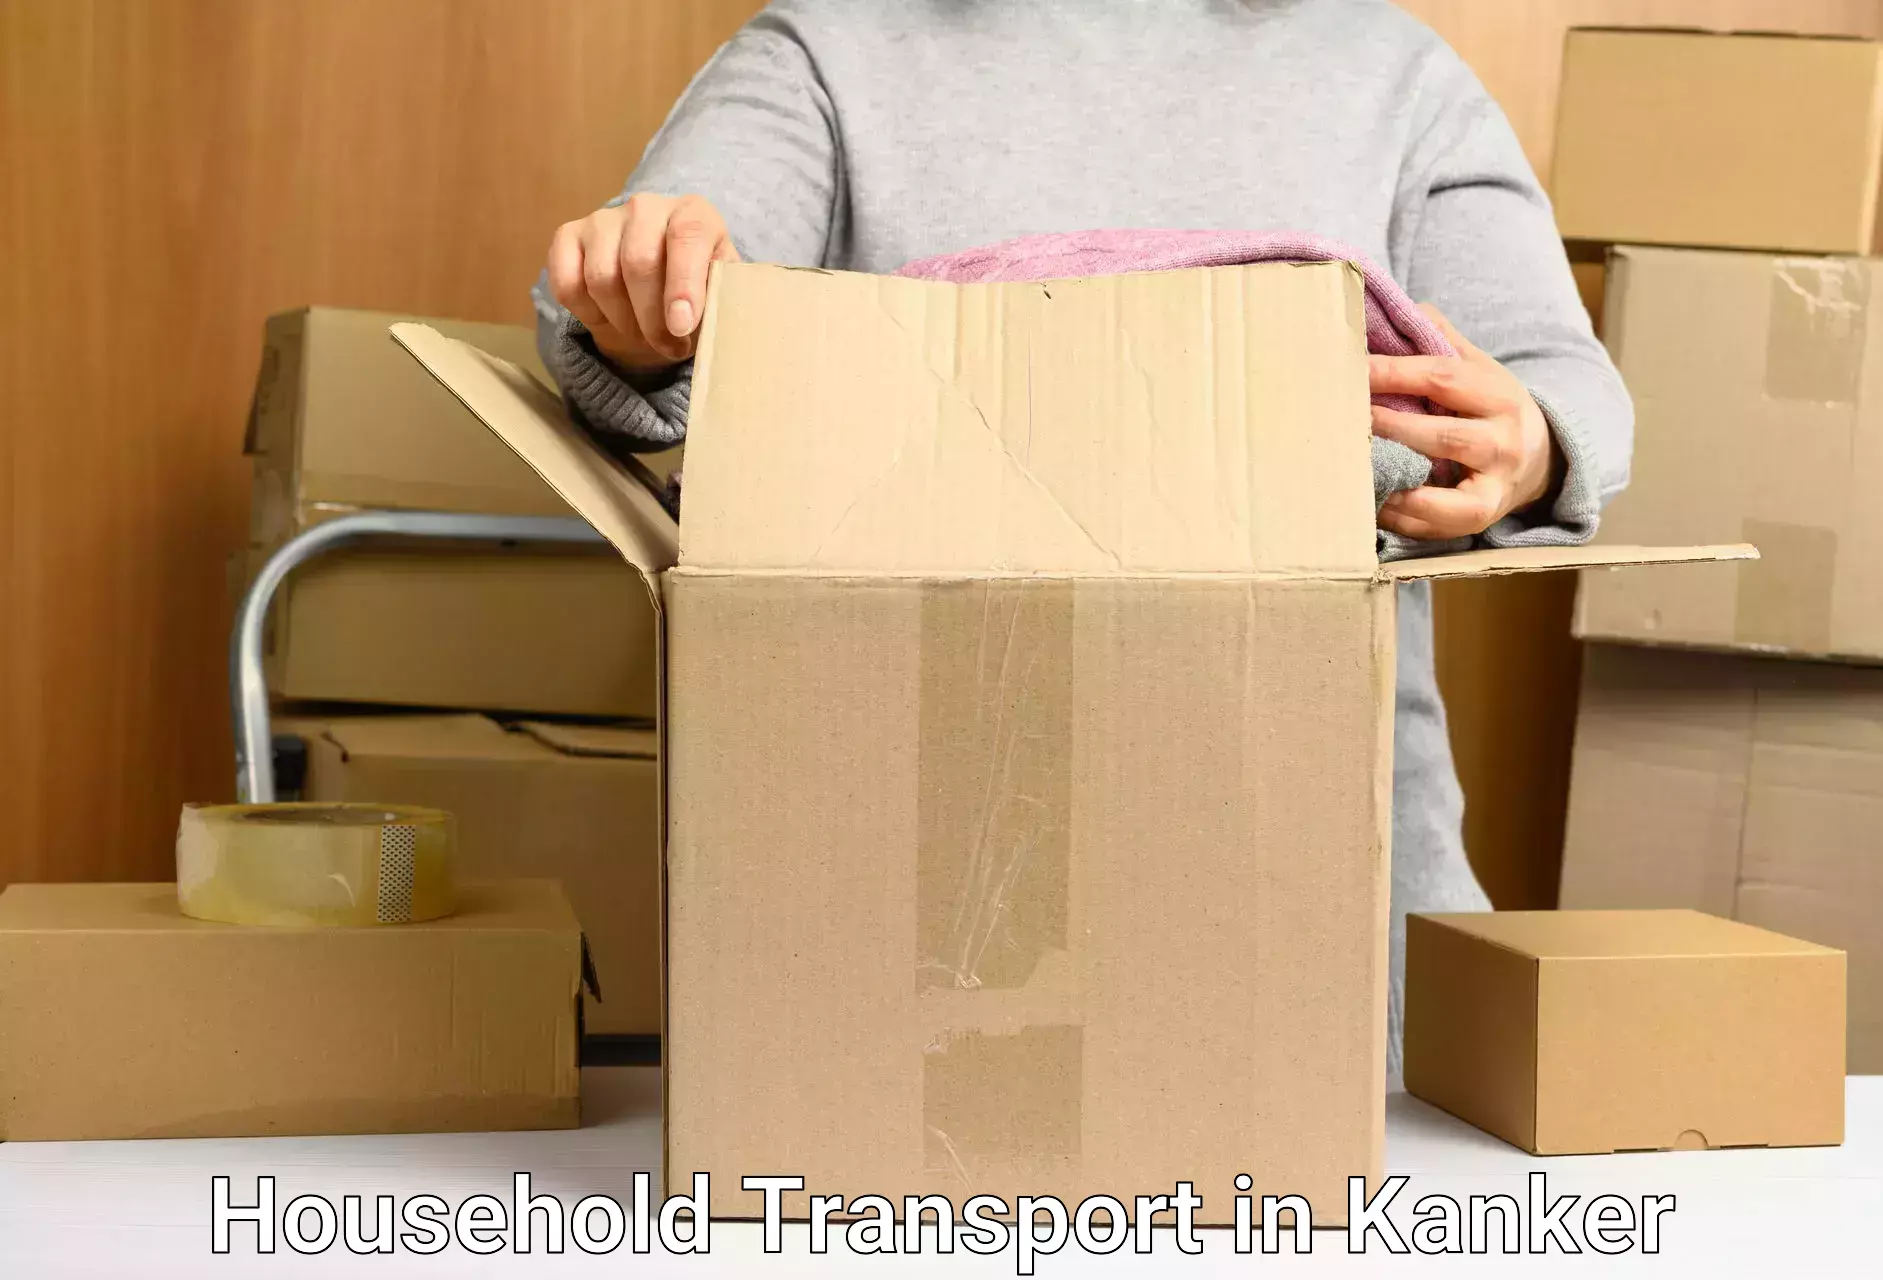 Expert household transport in Kanker